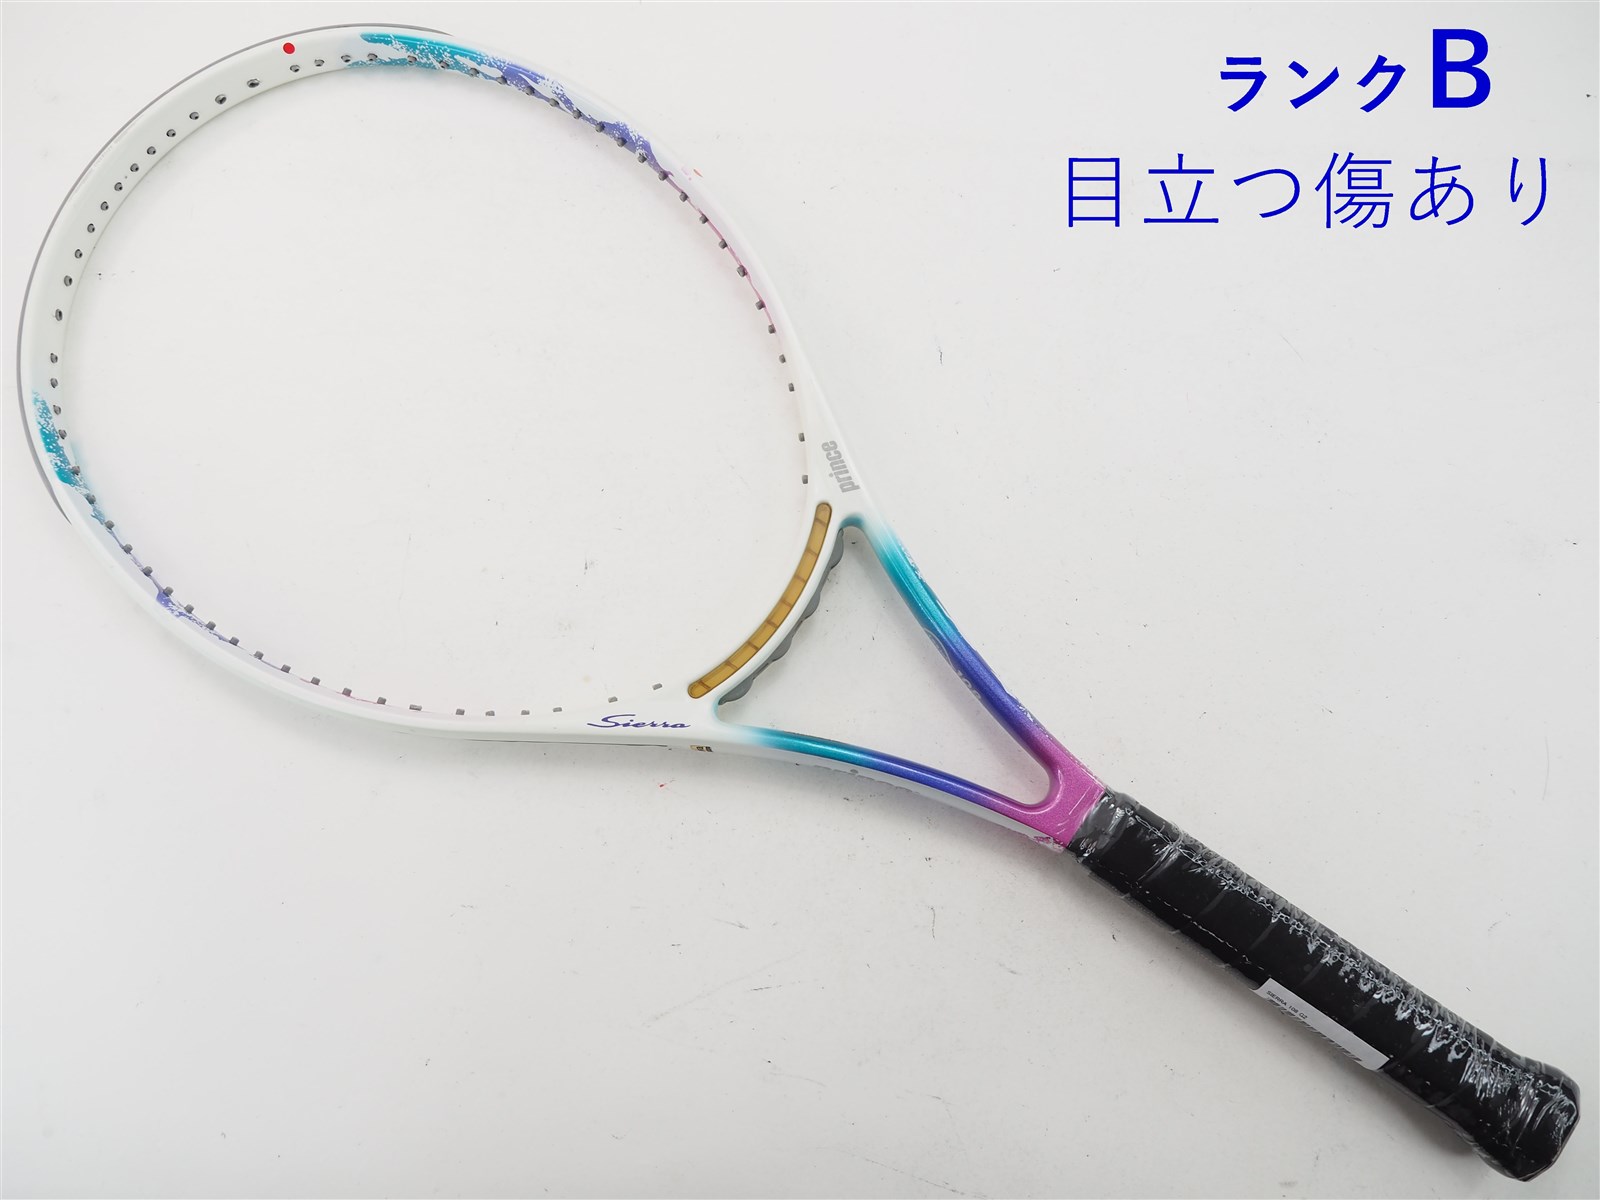 テニスラケット プリンス シエラ 100 2016年モデル (G1)PRINCE SIERRA 100 2016